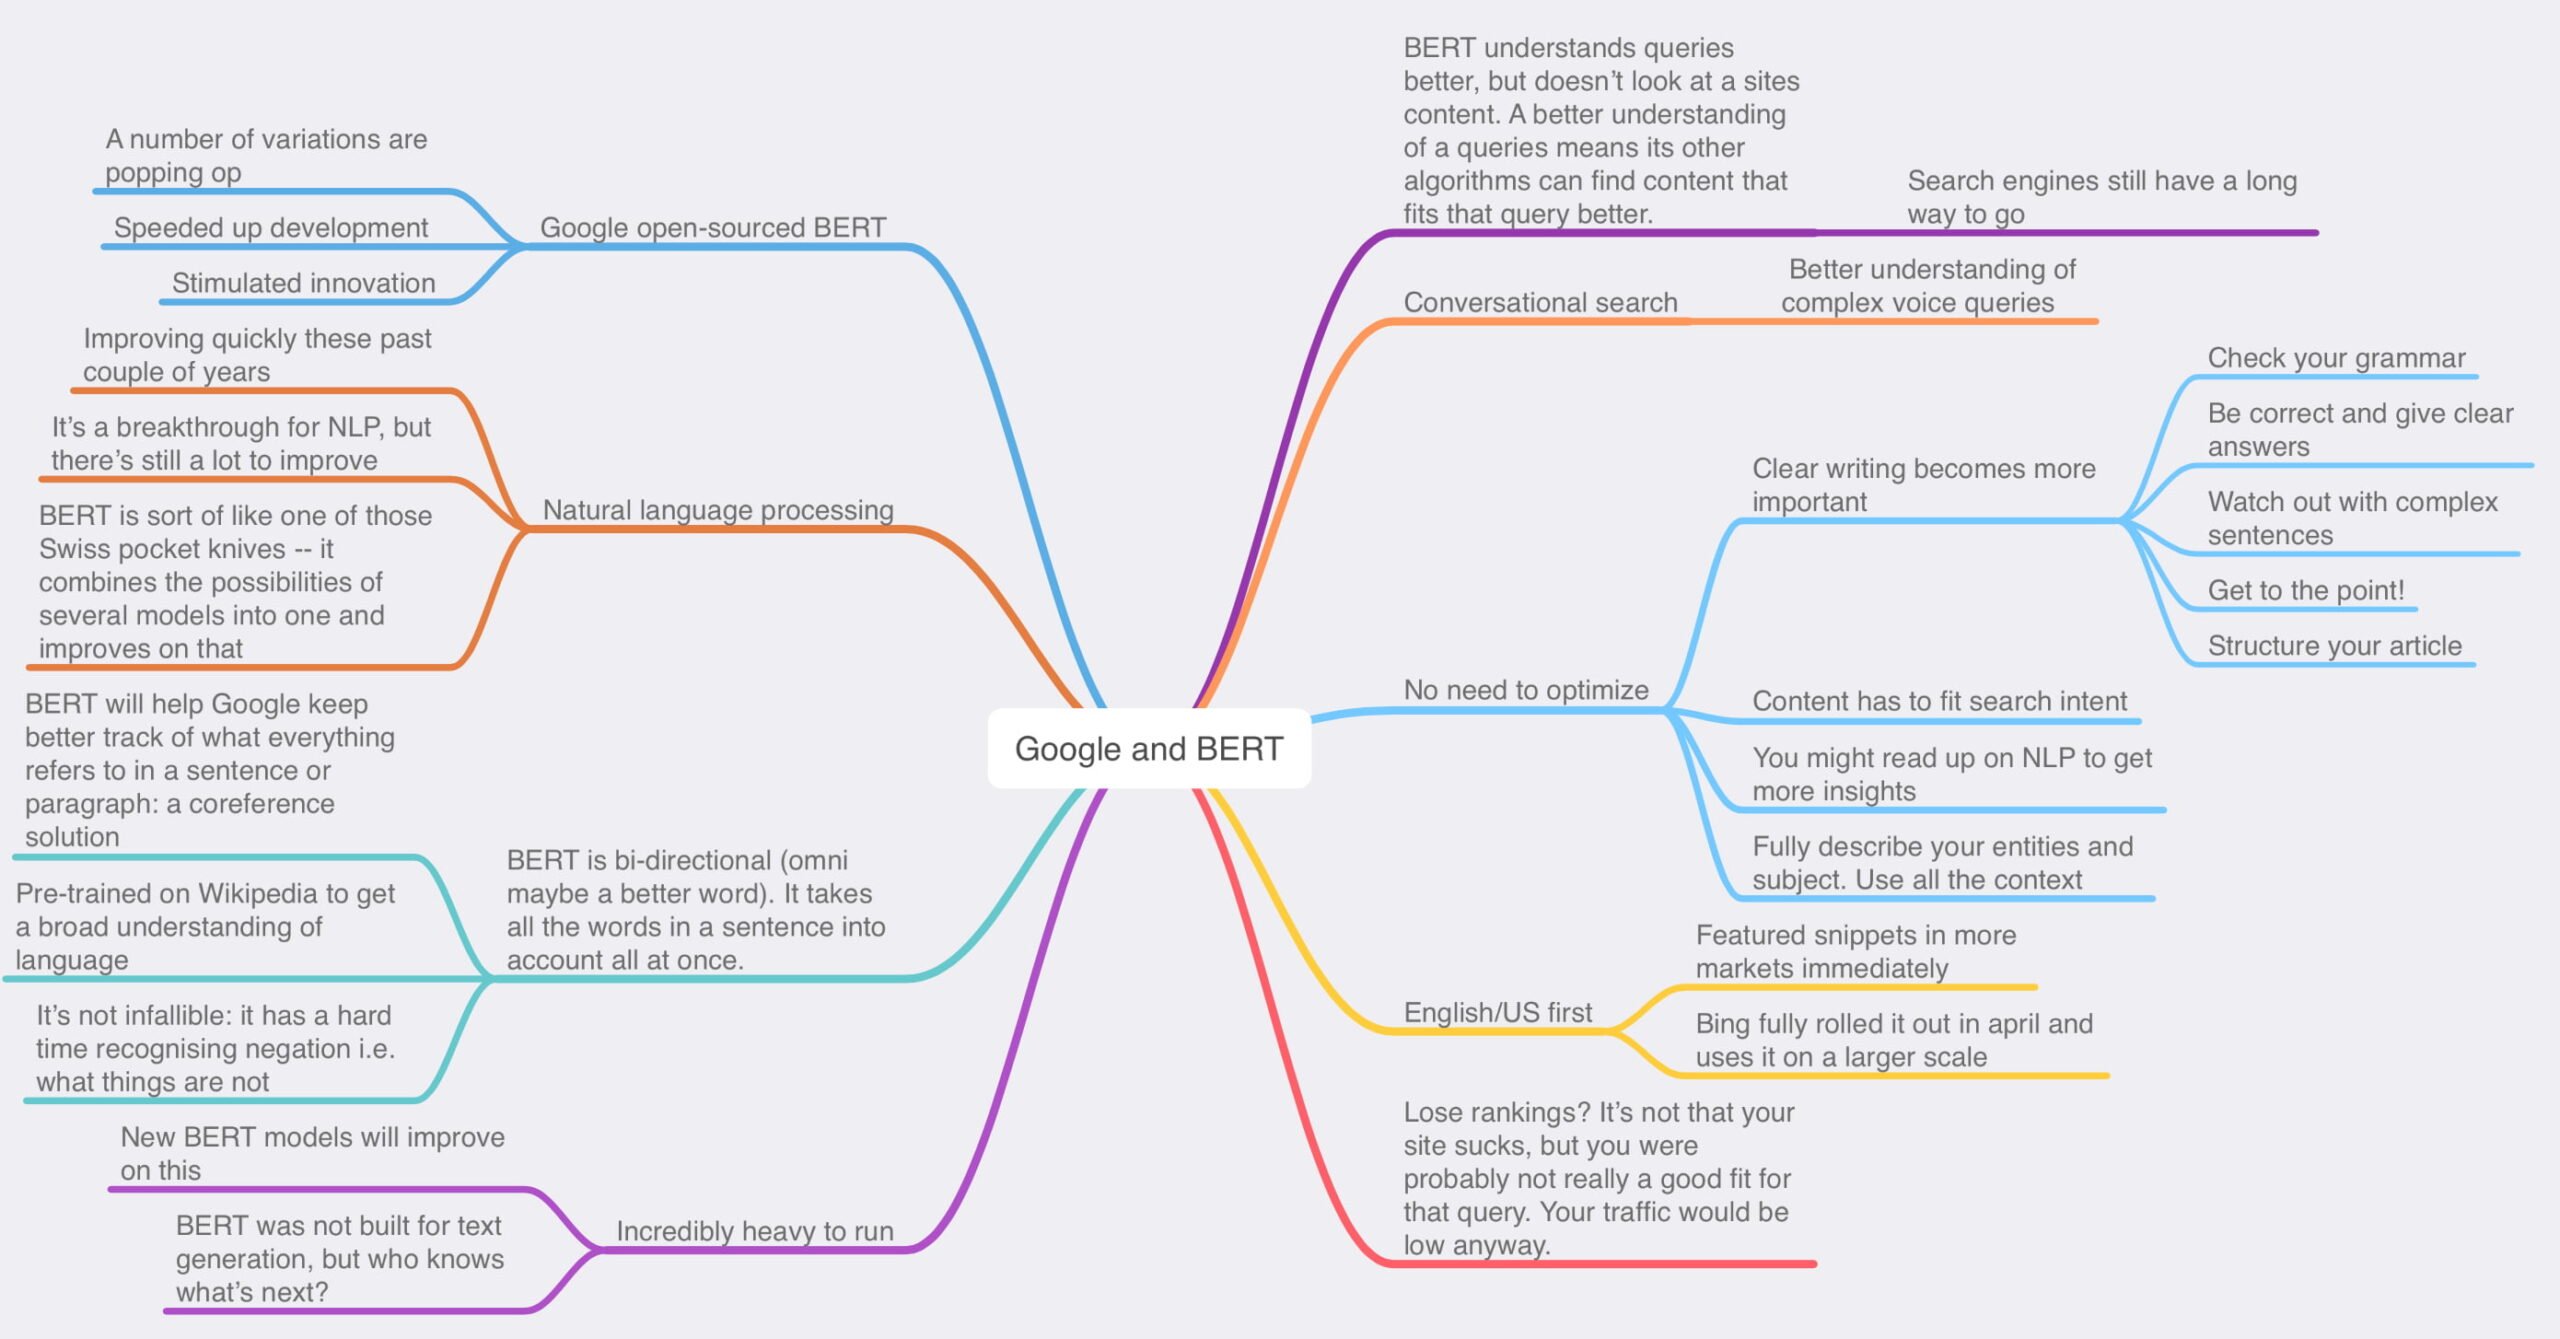 Exemplo de um mapa mental que explica o tópico do Google BERT para uma postagem de blog